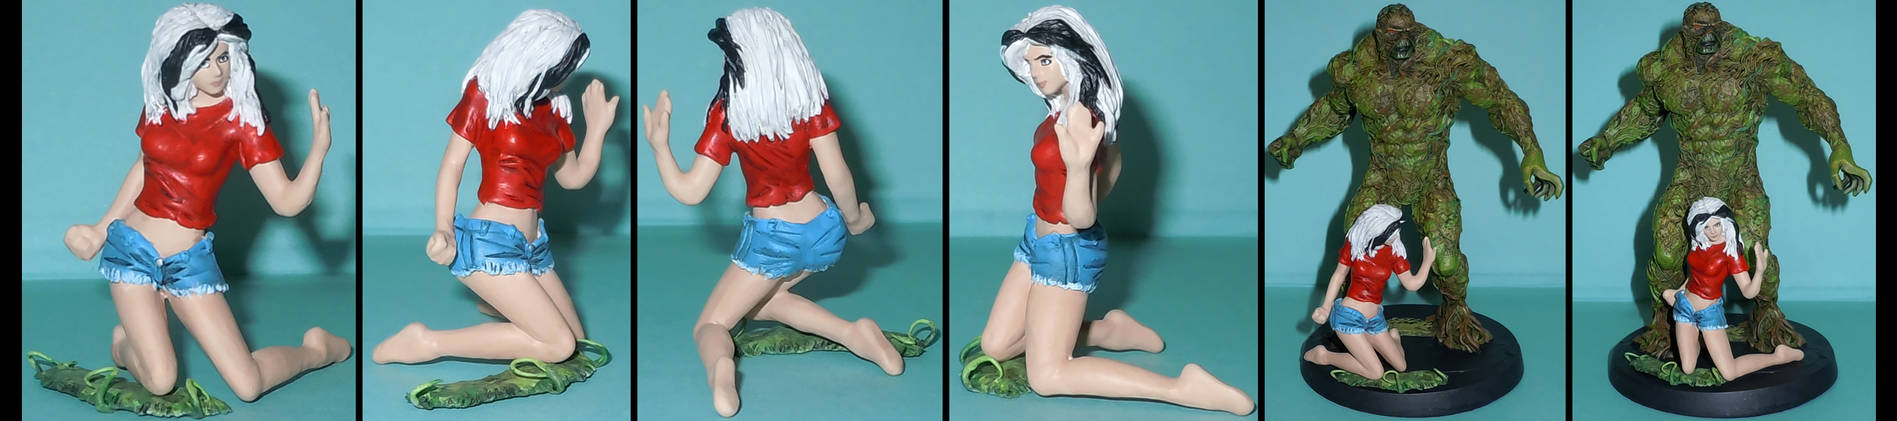 Abby Arcane custom figurine